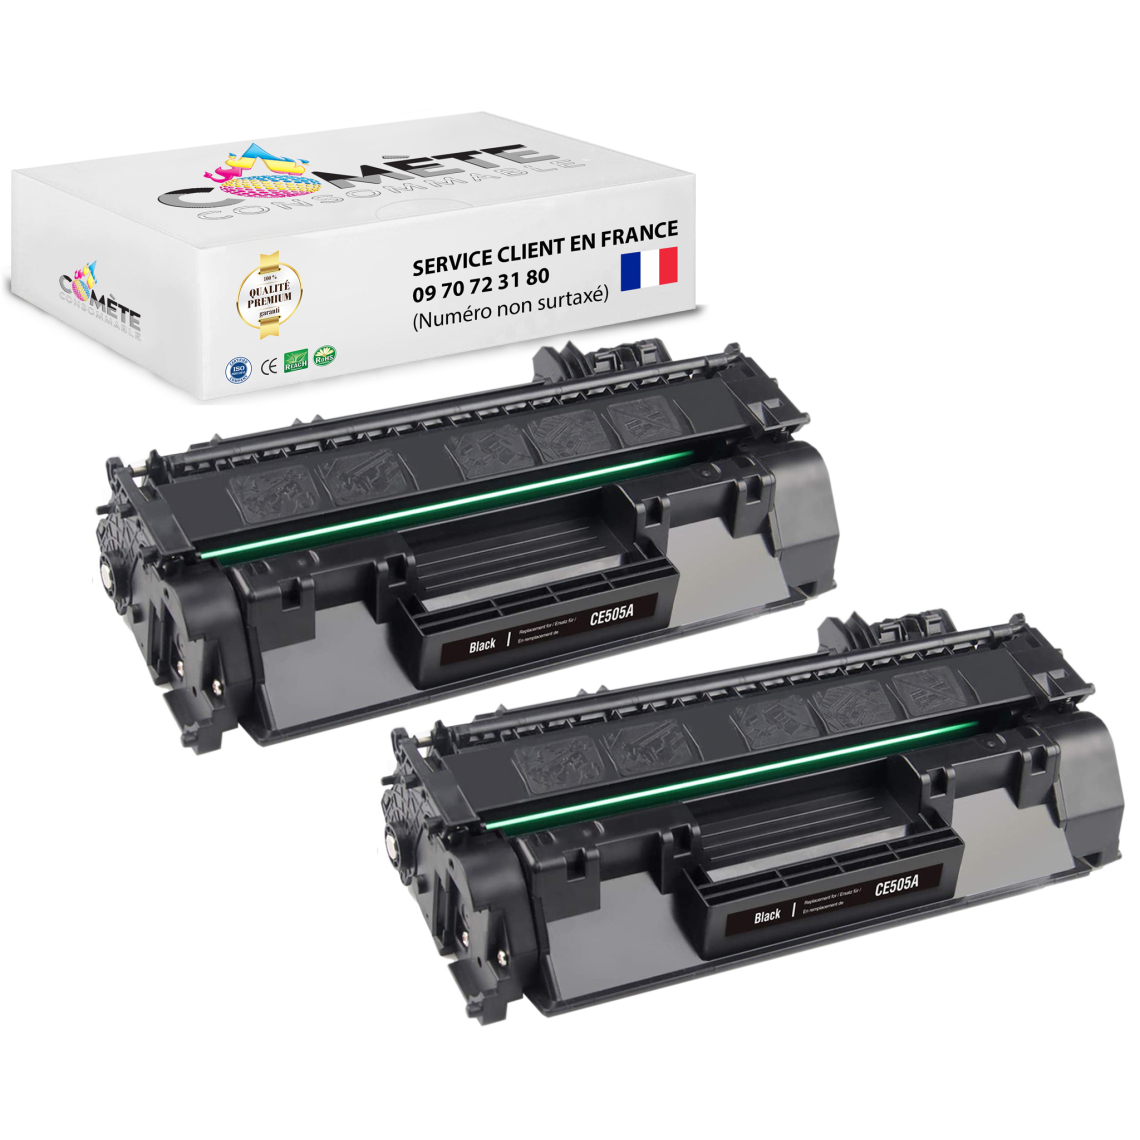 Comete Consommable - 05A 2 Toners compatible avec HP 05A CE505A - 2 Noir - Imprimante Laser